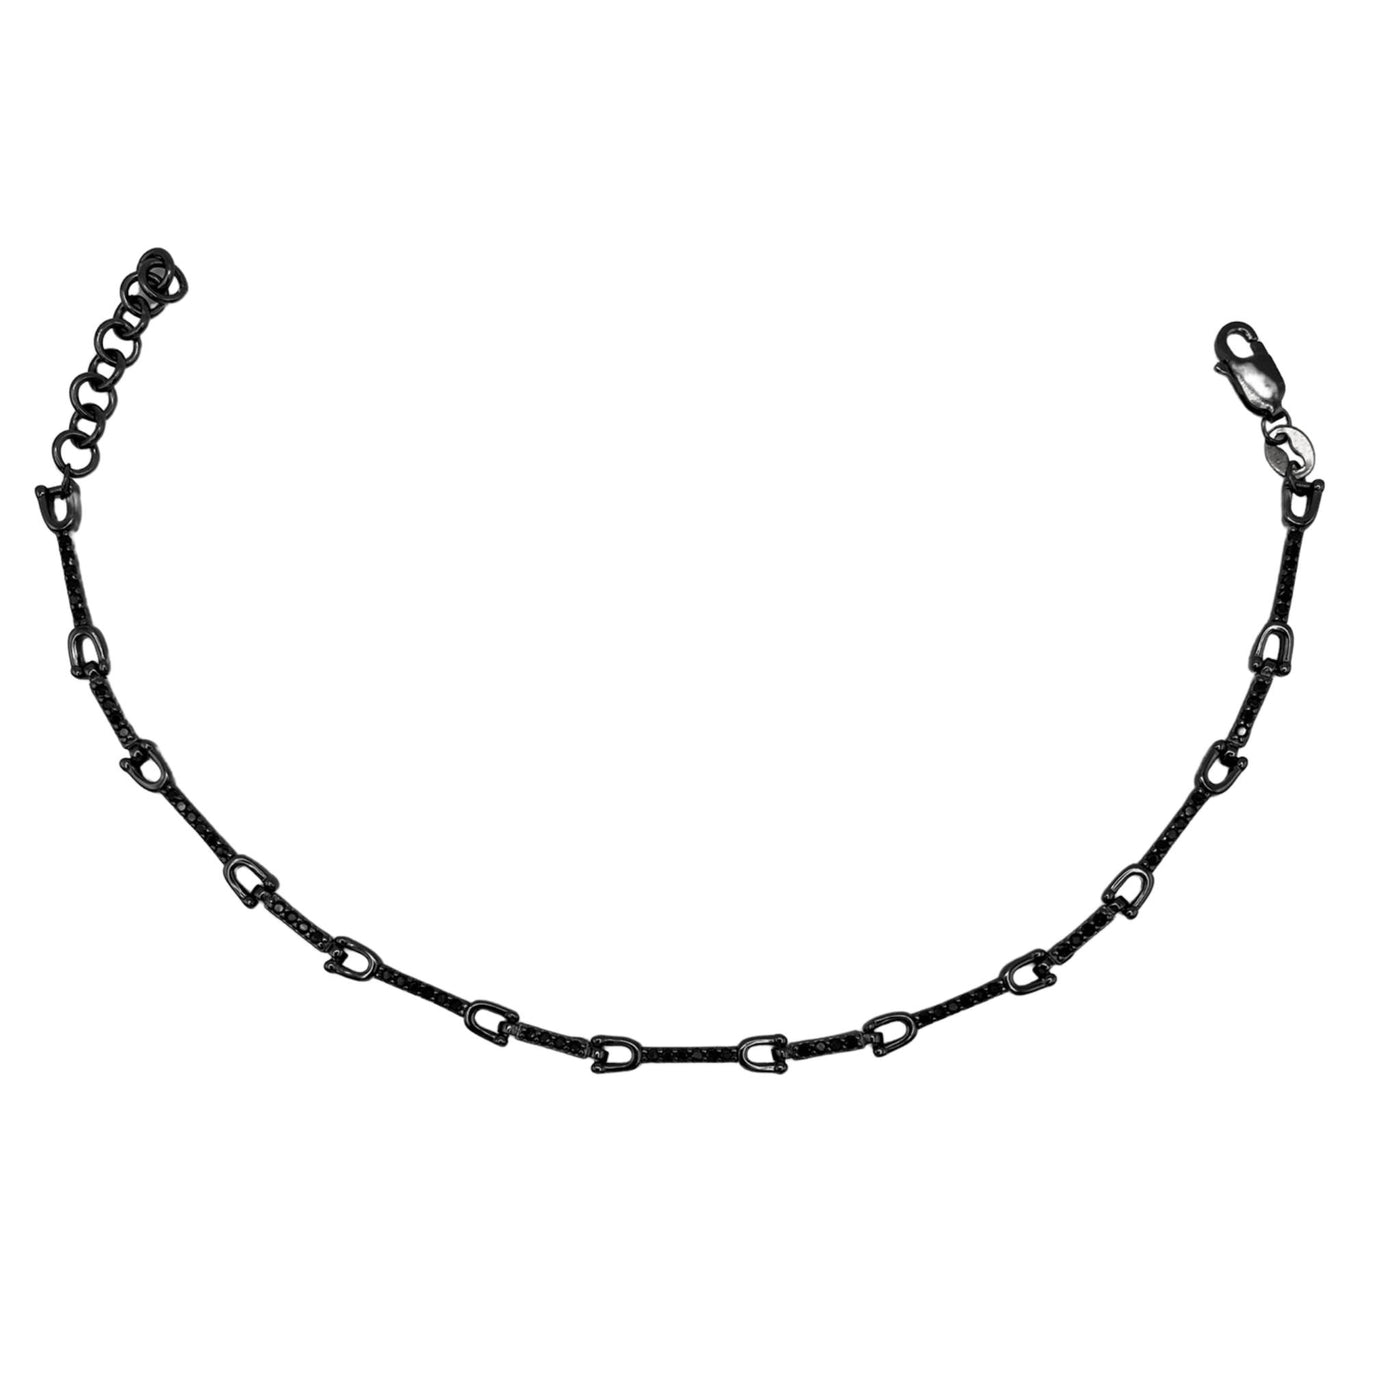 Silver black bracelet with U link